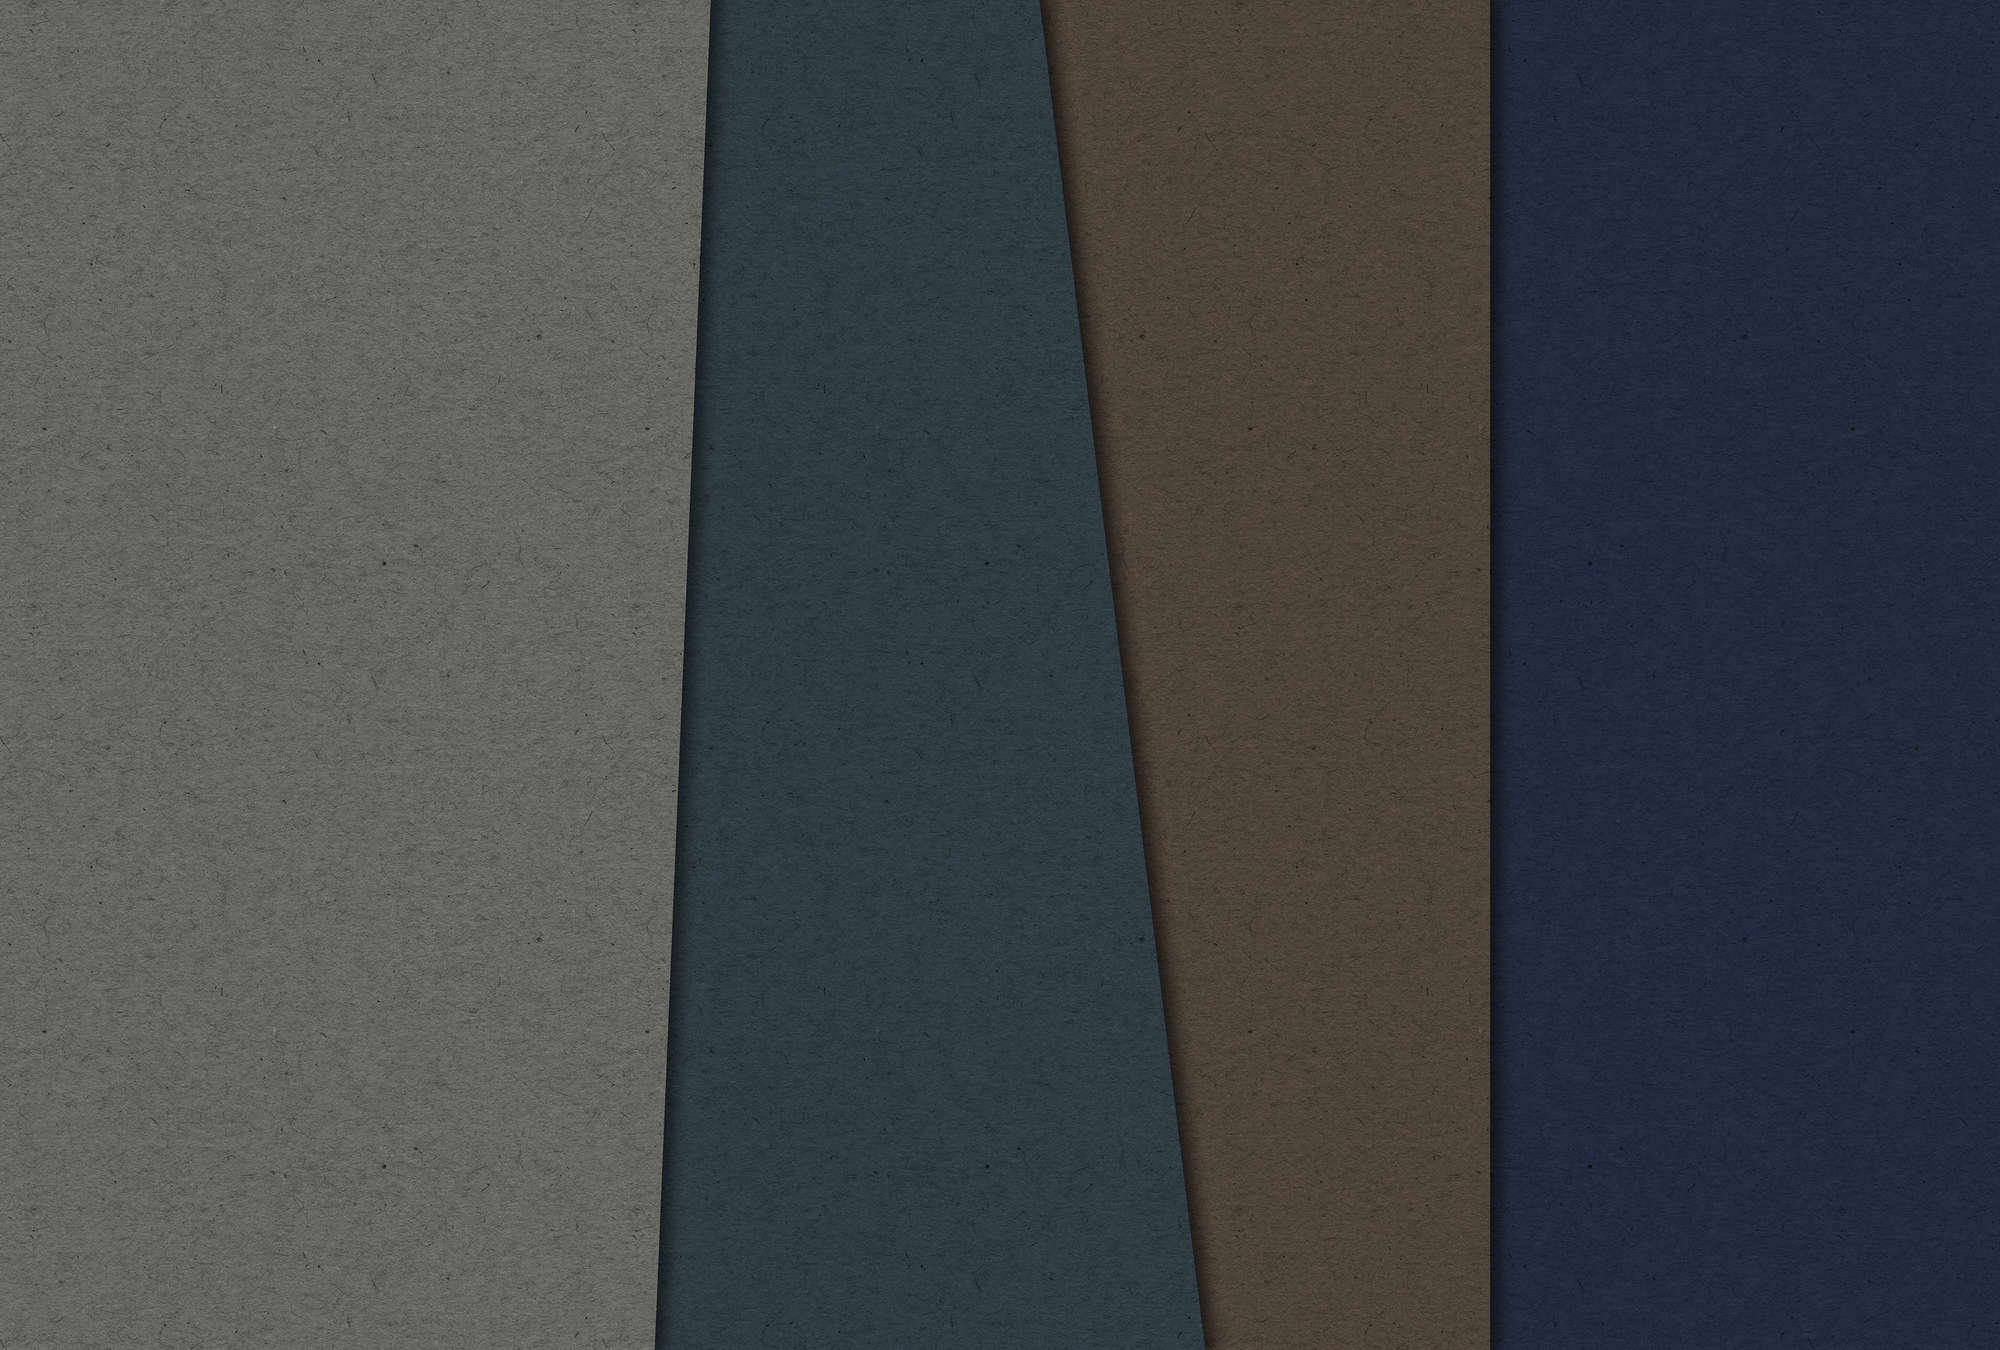             Layered Cardboard 2 - Carta da parati fotografica in struttura di cartone con campi di colore scuro - Blu, Marrone | Natura qualita consistenza in tessuto non tessuto
        